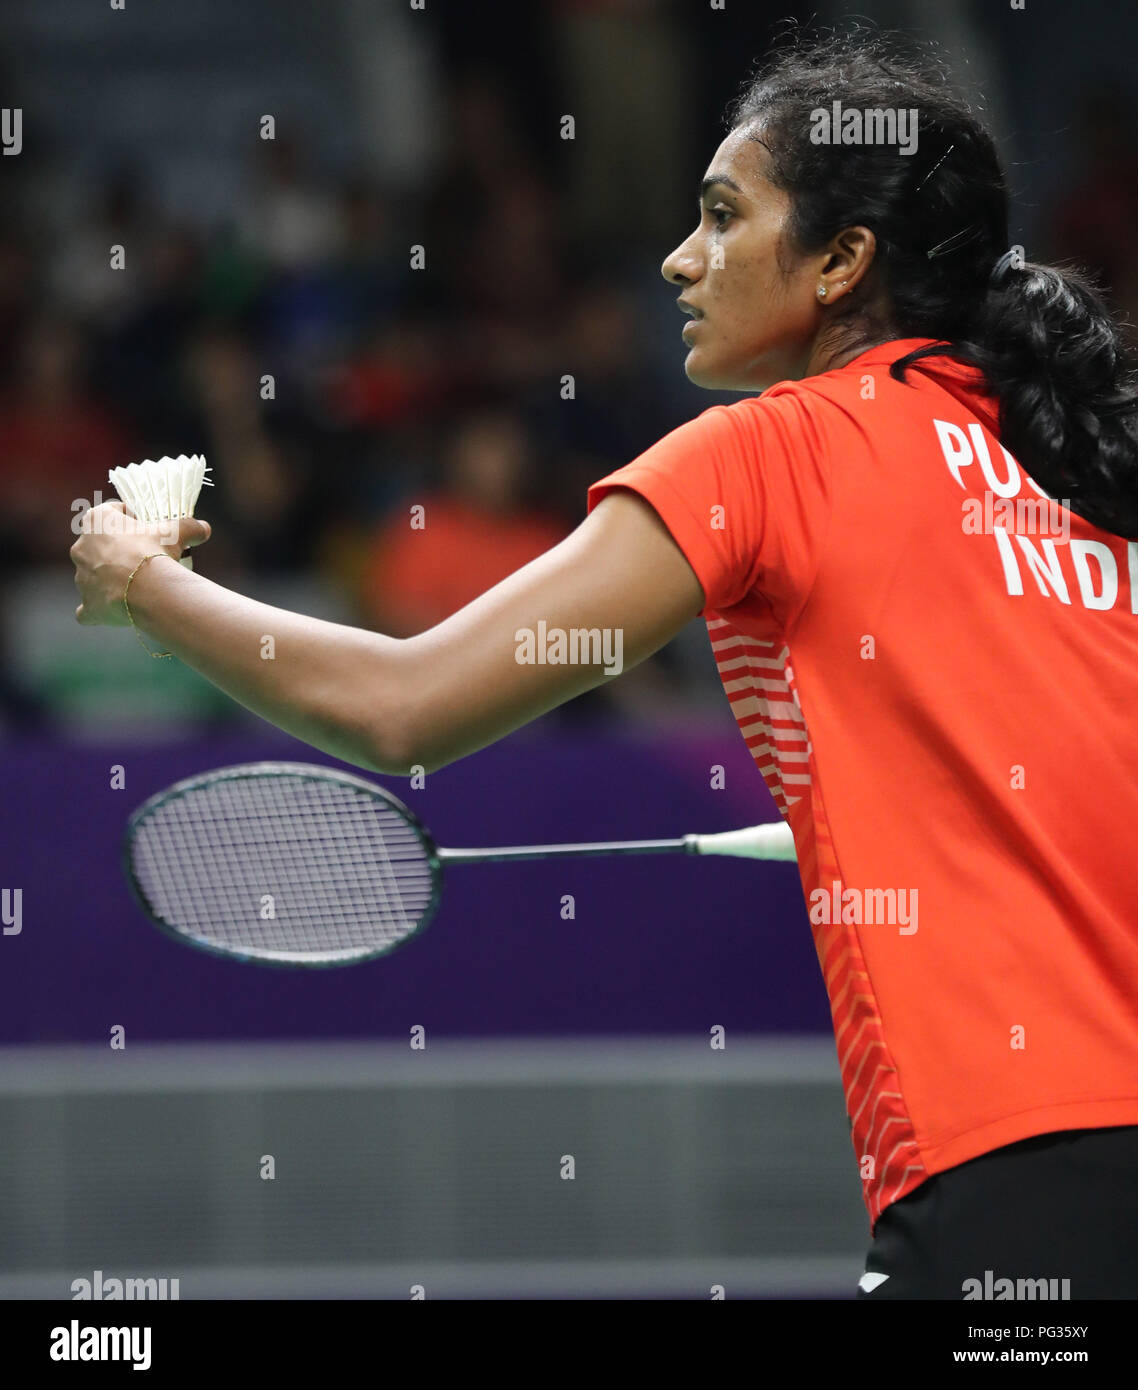 Jakarta, Indonesien, 23. August 2018: Badminton: Indiens Star Shuttler PV-Sindhu bereitet die SESHADRI SUKUMAR Credit: SESHADRI SUKUMAR / alamy Live Nachrichten zu liefern Stockfoto